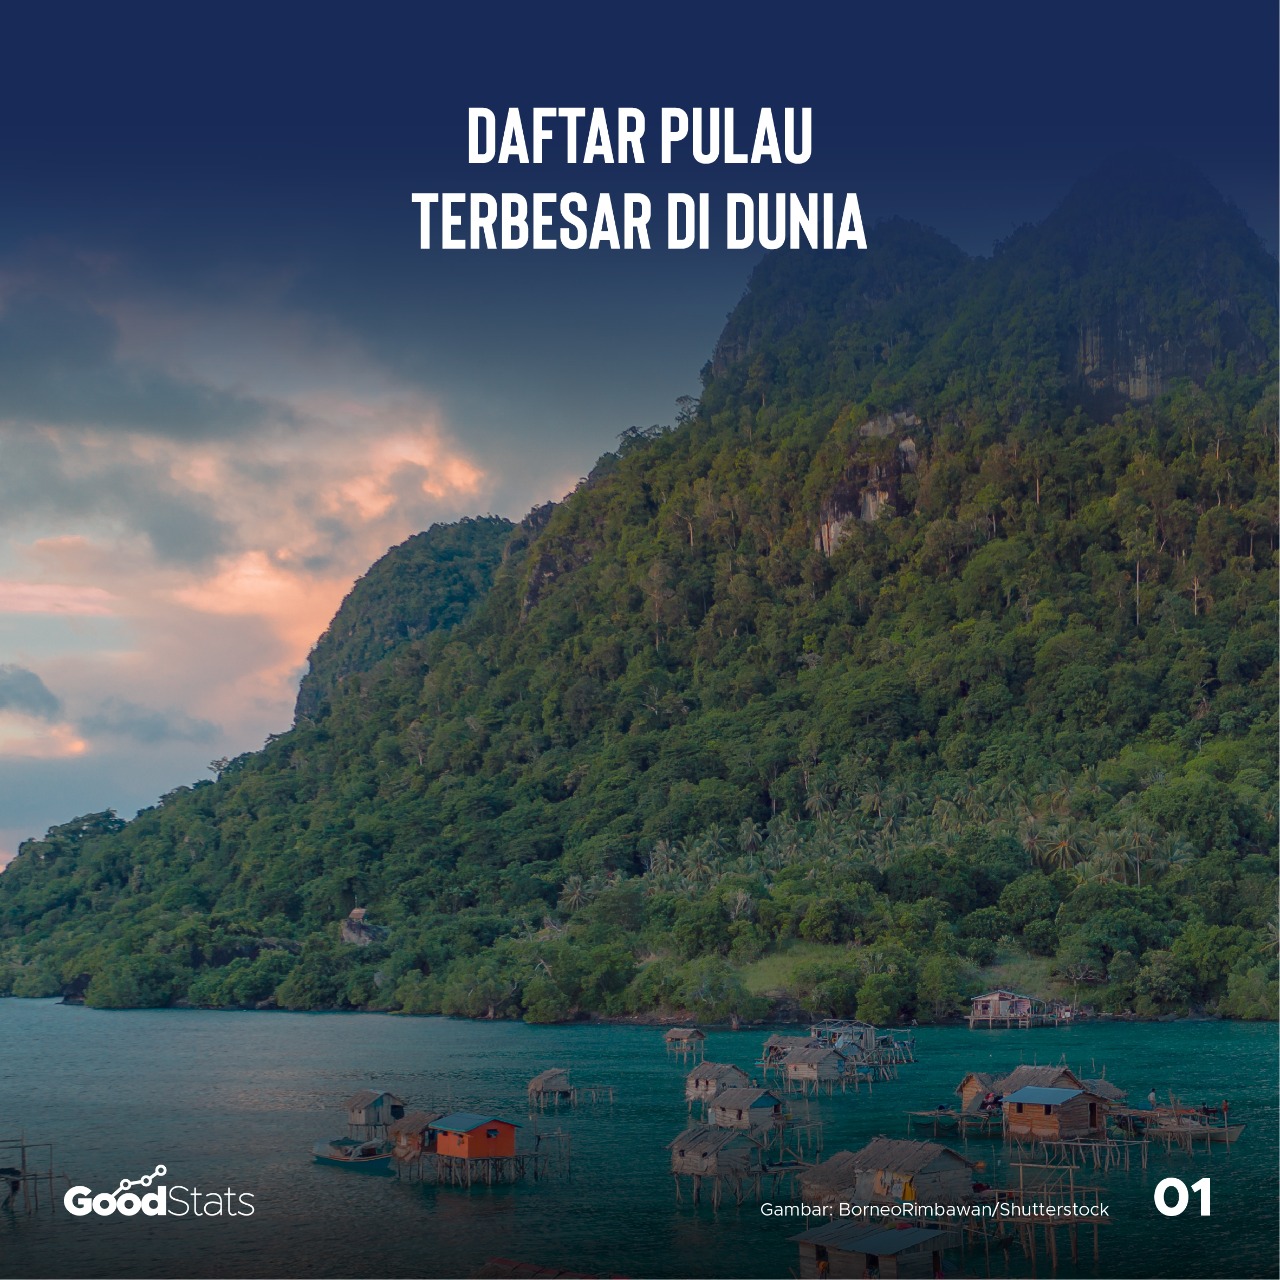 Daftar 10 Pulau Terbesar di Dunia | Good News From Indonesia